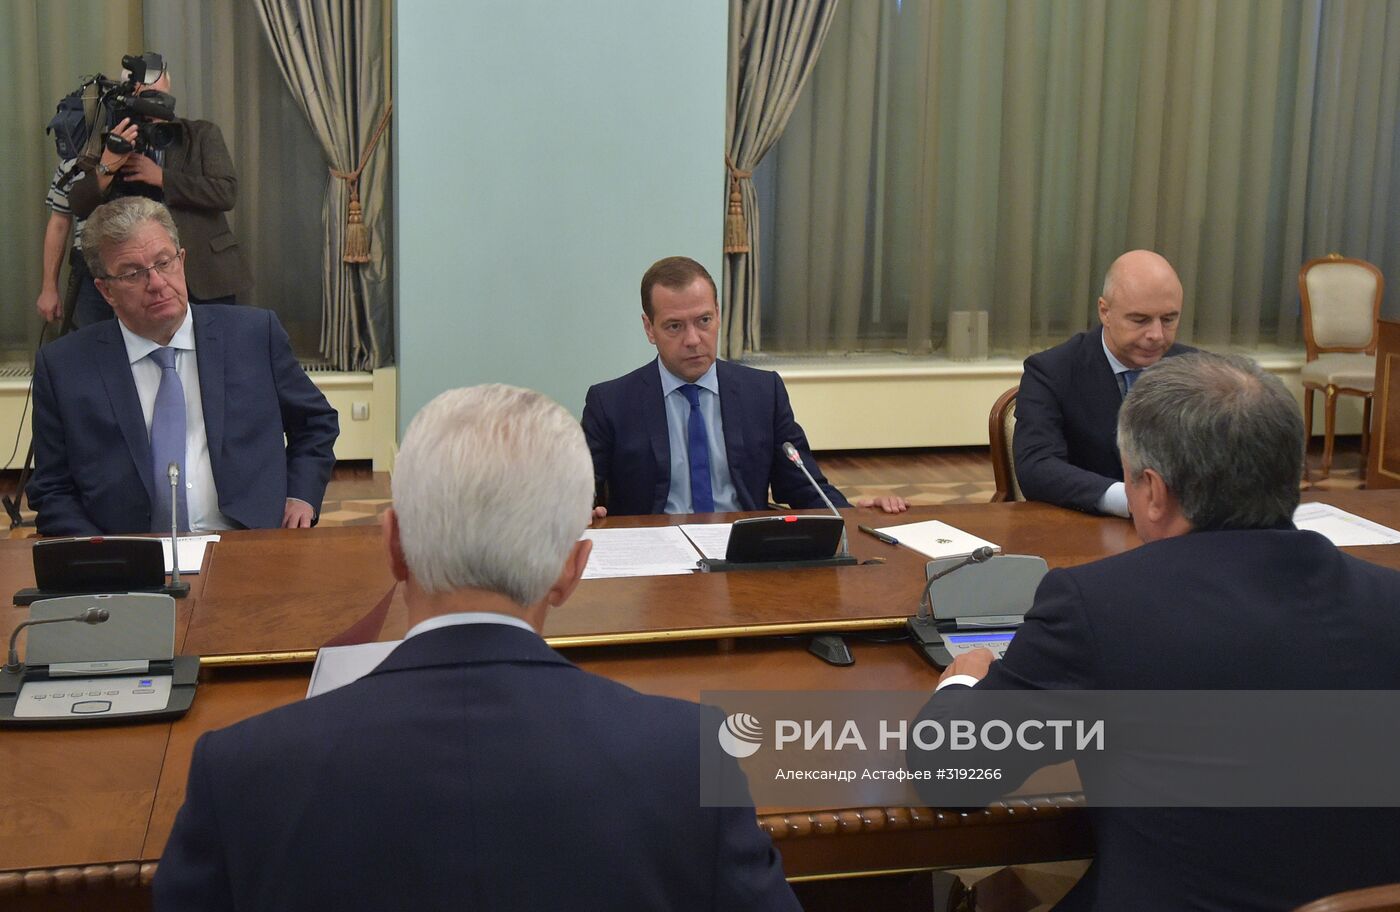 Премьер-министр РФ Д. Медведев провел совещание с руководством фракции "Единая Россия" в Госдуме РФ